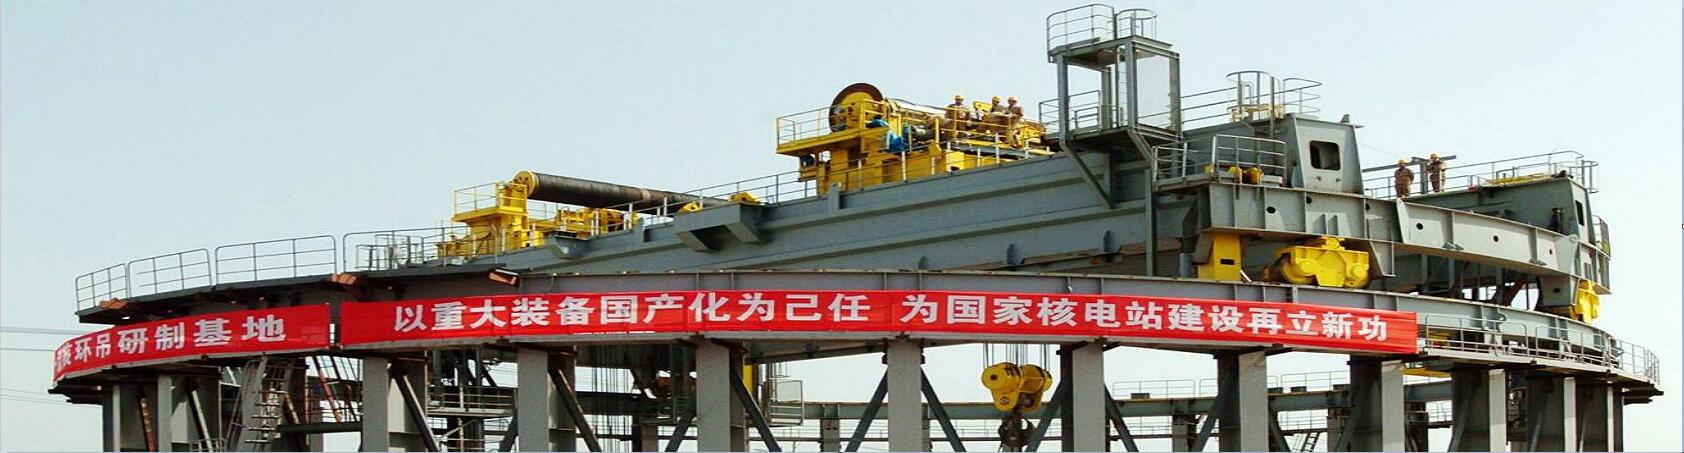 中国桥式起重机